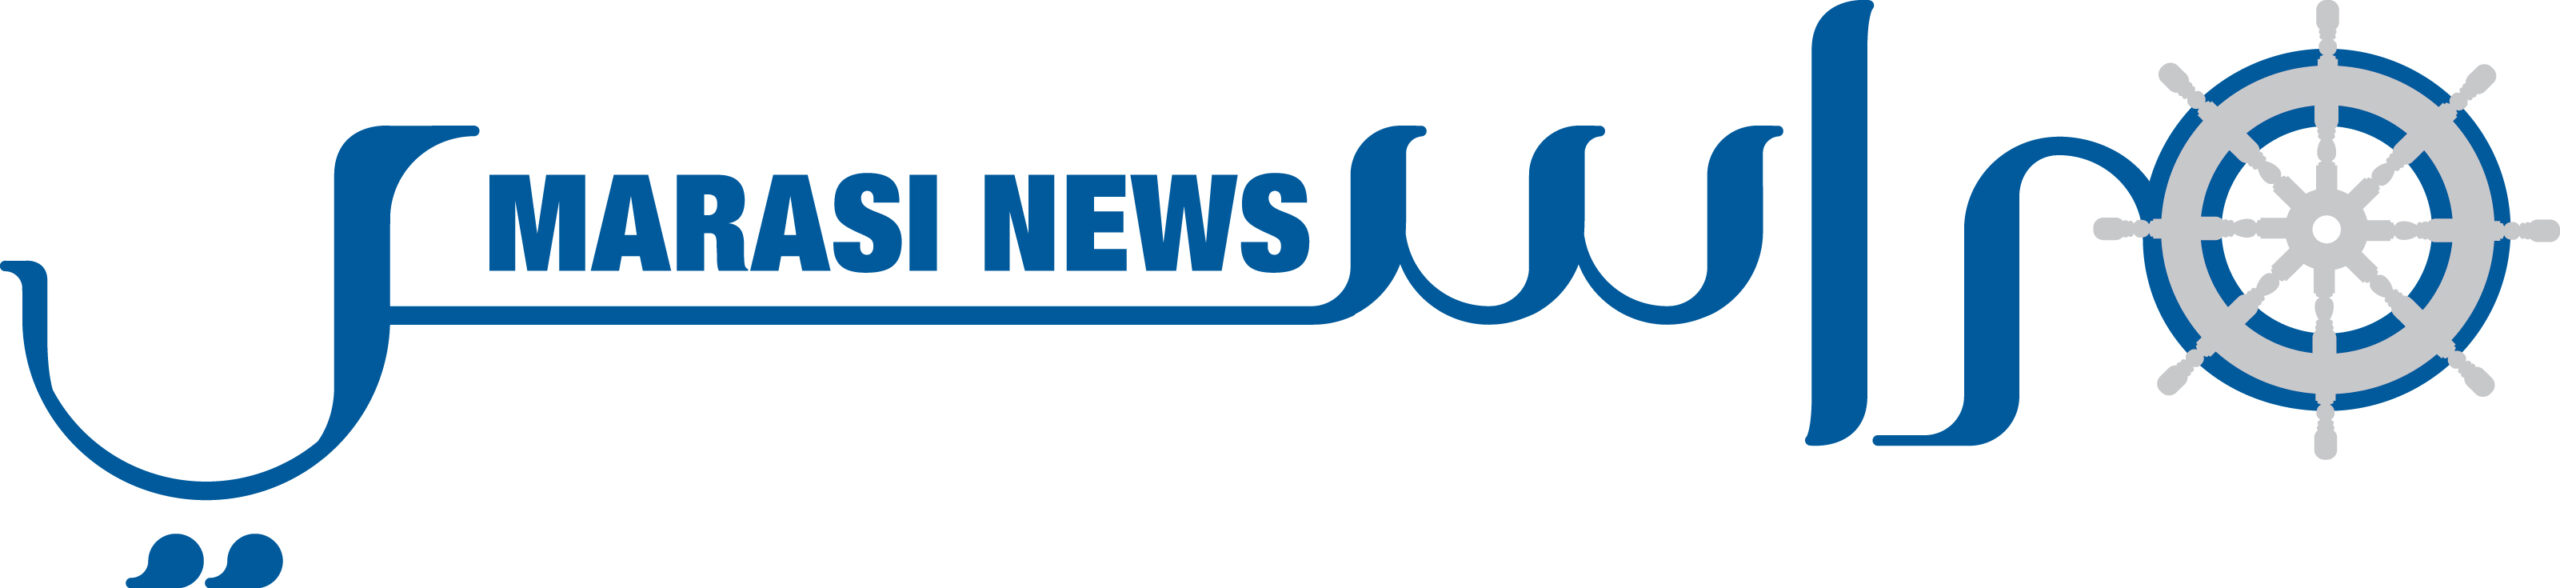 Marasi Logo scaled - MEDIA PARTNERS